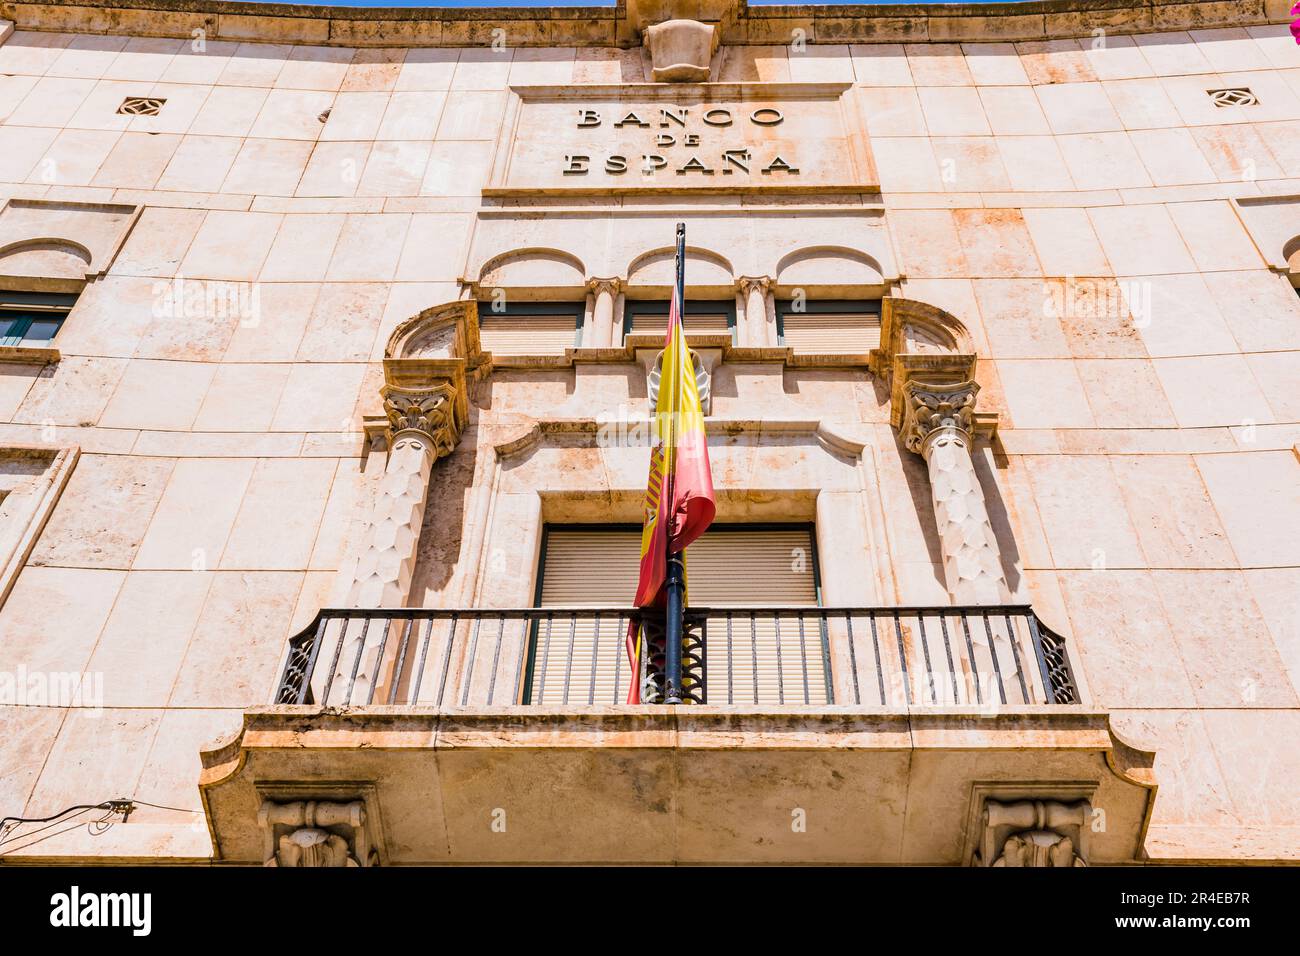 Facade of the Bank of Spain building. Melilla, Ciudad Autónoma de Melilla, Spain, África, EU. Stock Photo